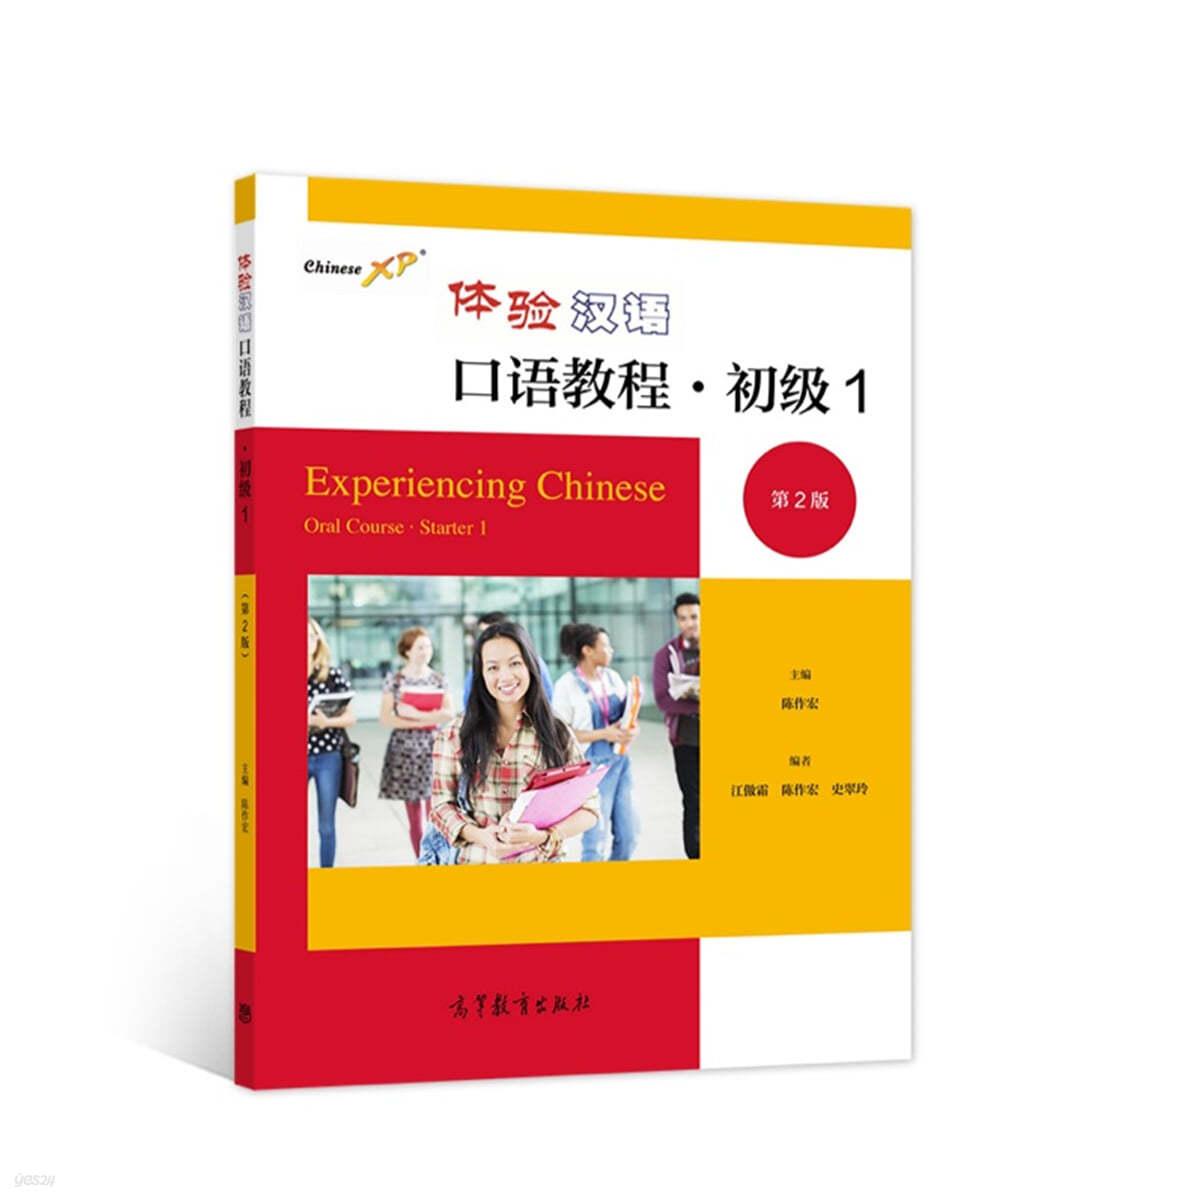 체험한어구어교정 초급1 (제2판) 體驗漢語口語?程 初級1（第2版）